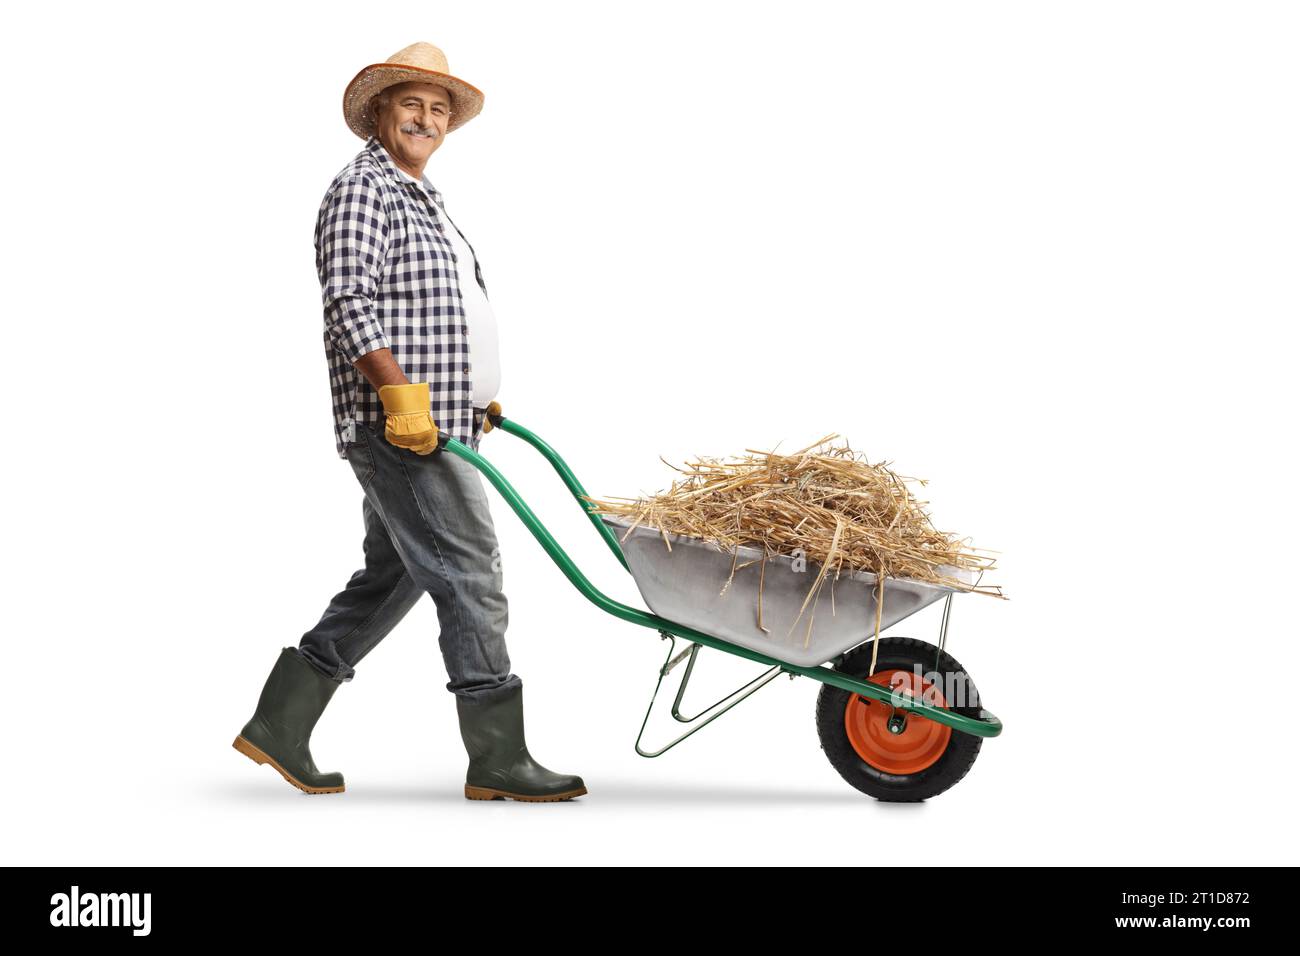 Immagine a profilo completo di un agricoltore maturo che spinge una carriola con una pila di fieno isolato su sfondo bianco Foto Stock